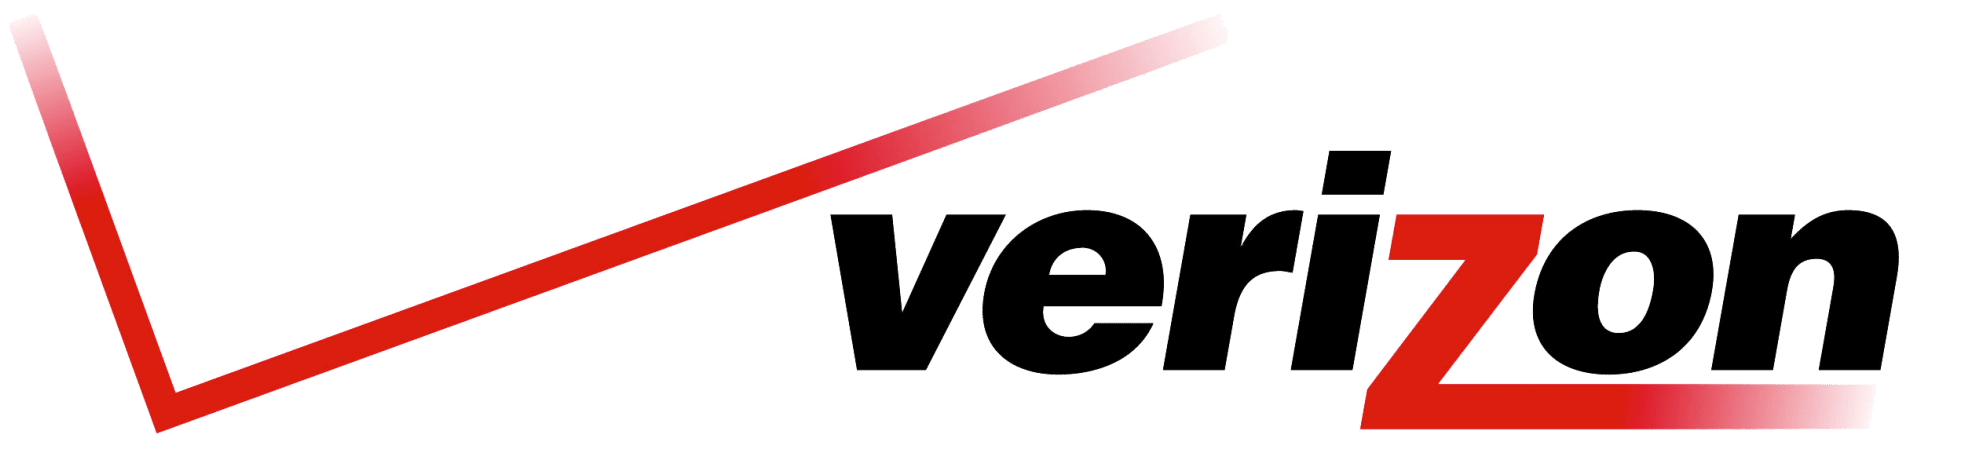 logotipo de verizon